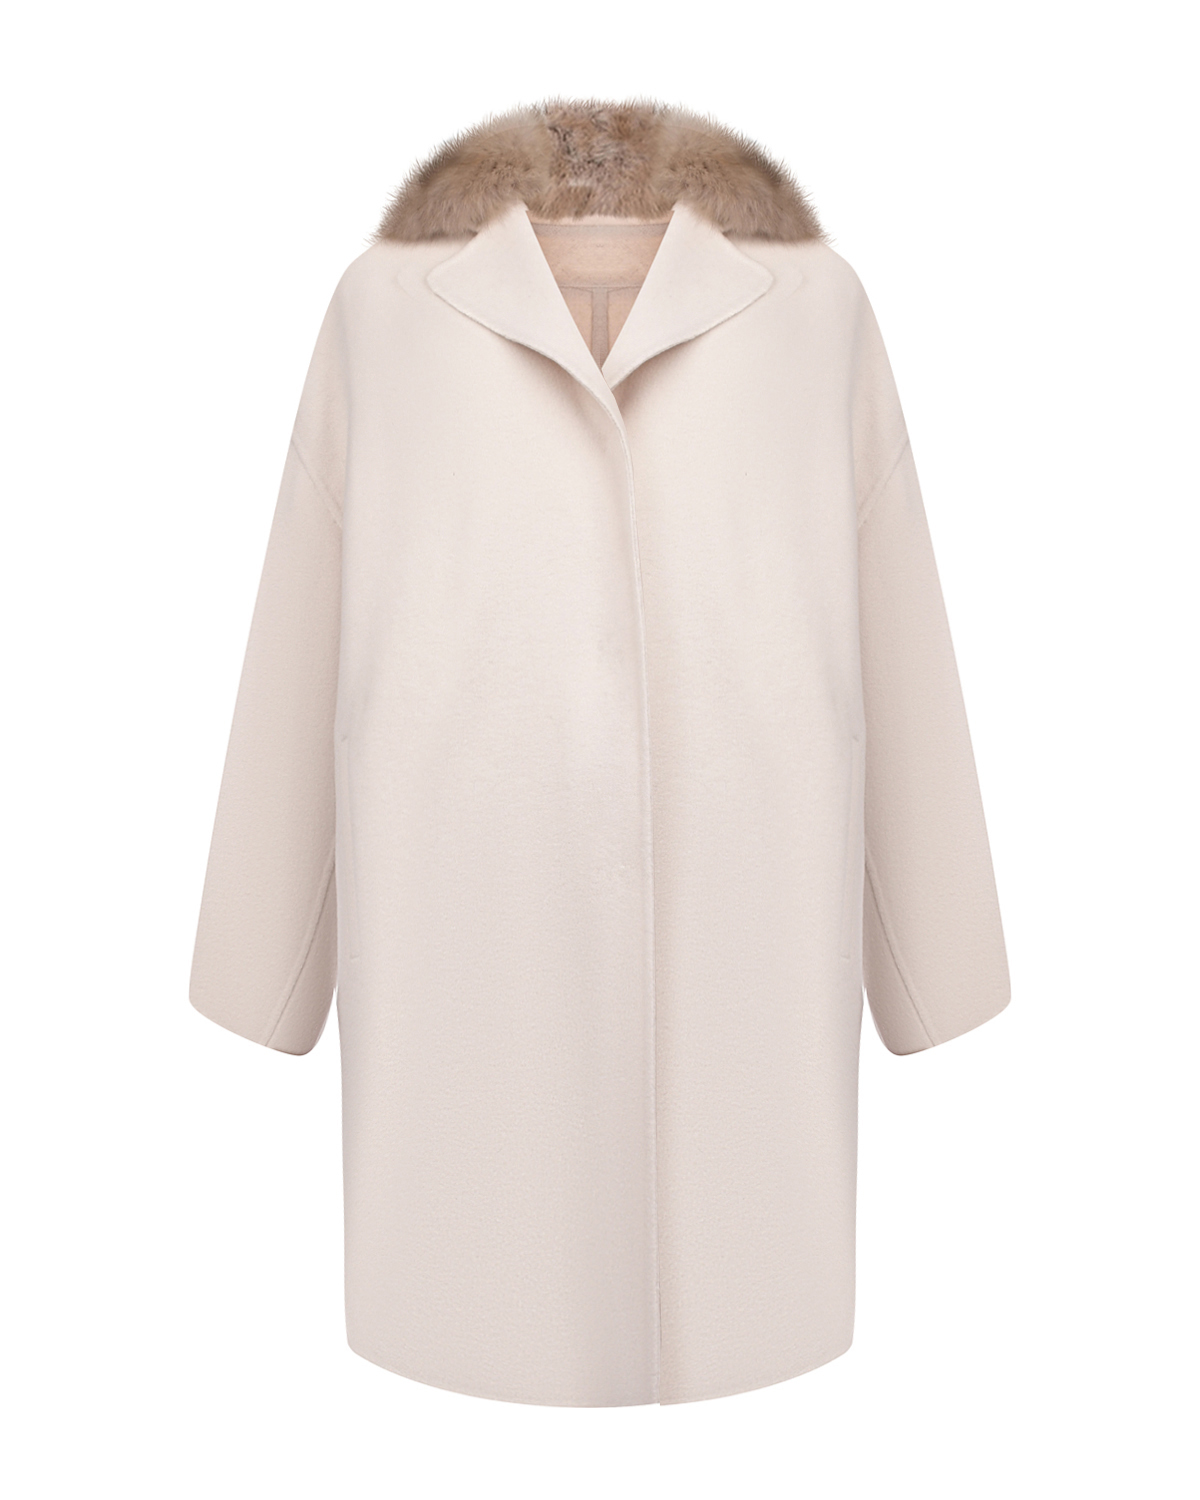 Кашемировое пальто с воротом из меха соболя Yves Salomon, размер 38, цвет нет цвета - фото 1